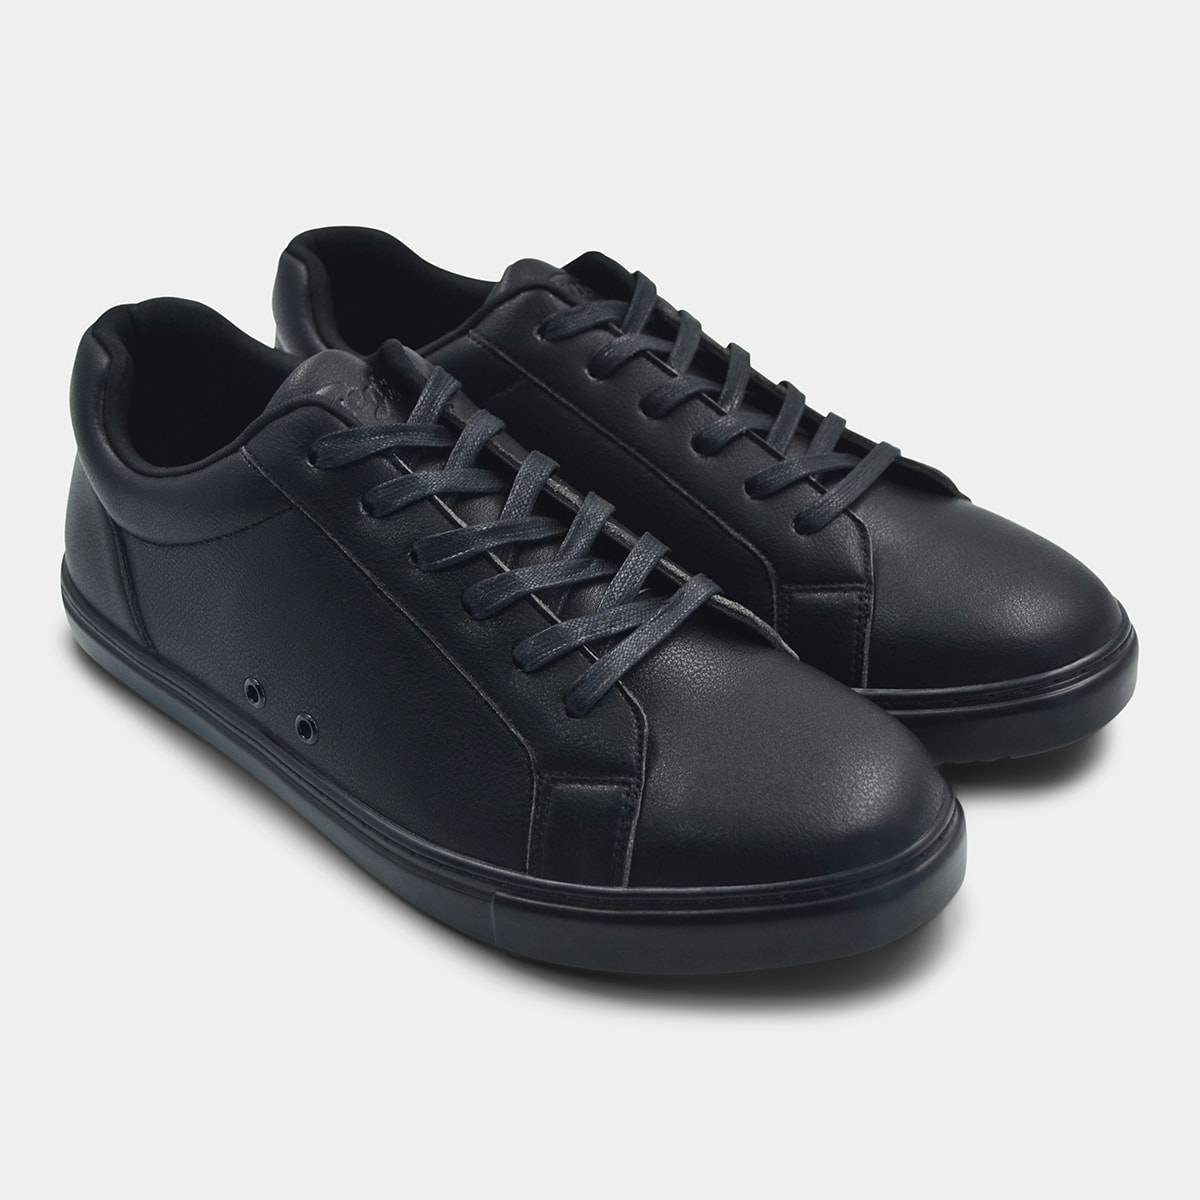 Fuego | Dance Sneaker | All-Black – Fuego, Inc.